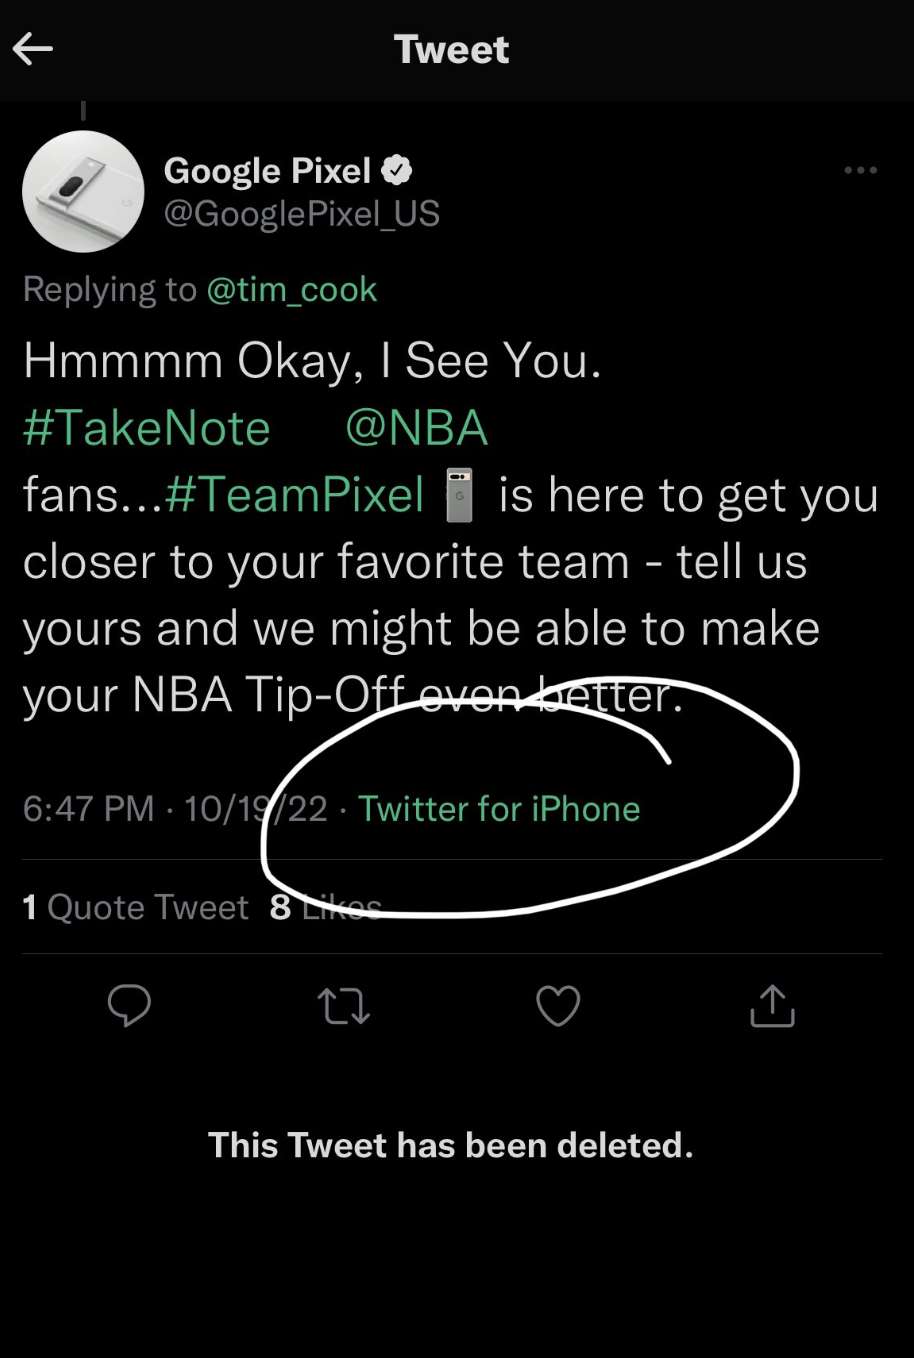 Resim, Google'ın bir Pixel cihazını tanıtırken yanlışlıkla bir iPhone'dan tweet atmasına ait bir tweet.